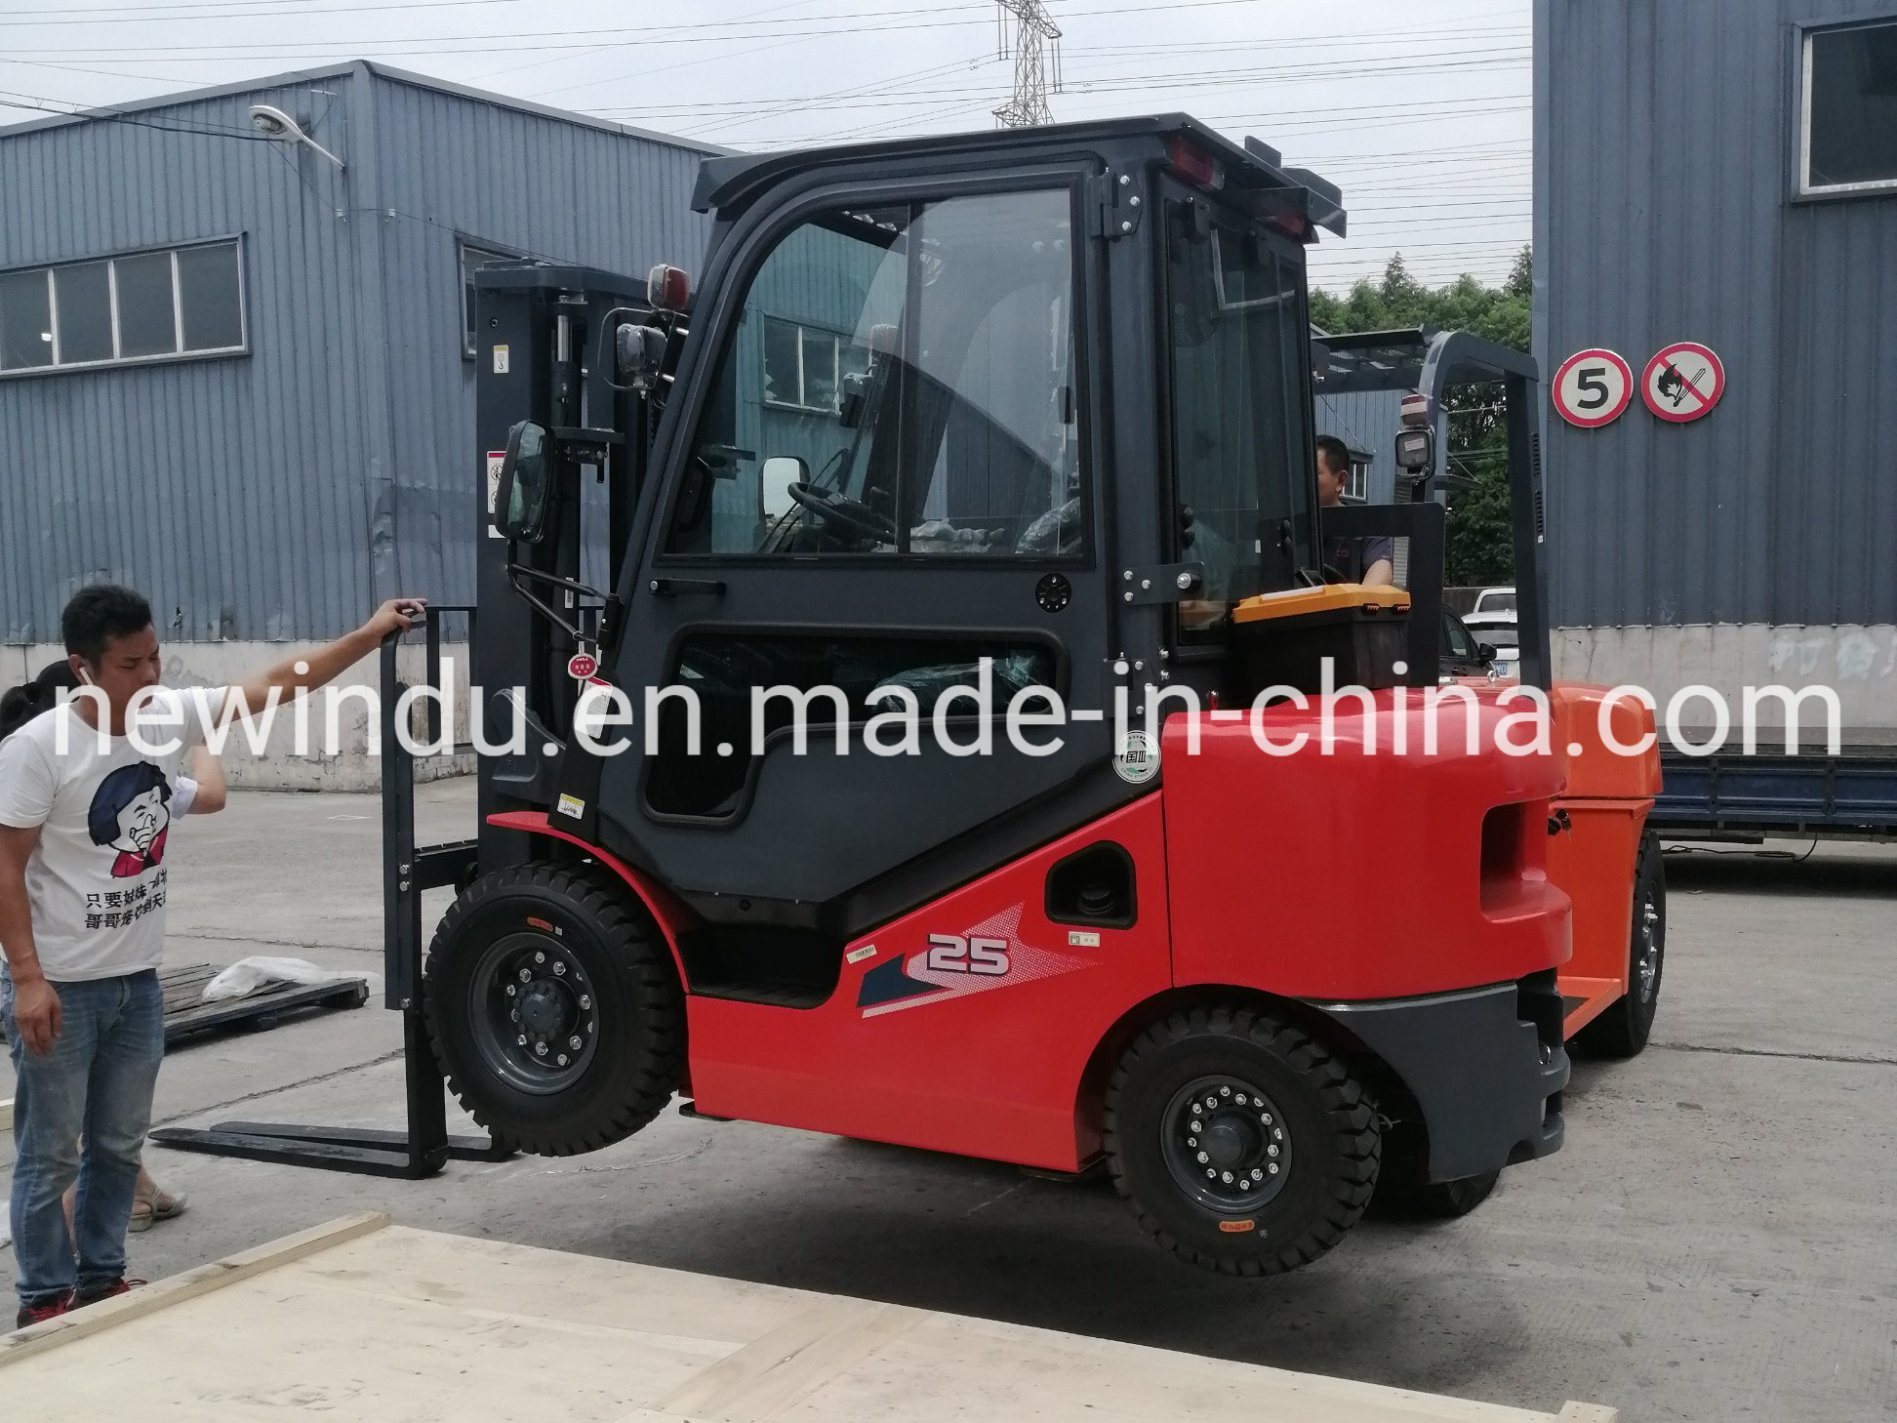 
                Het beroemde merk Heli 2.5 ton Diesel Forklift Cpcd25 van China voor Verkoop
            